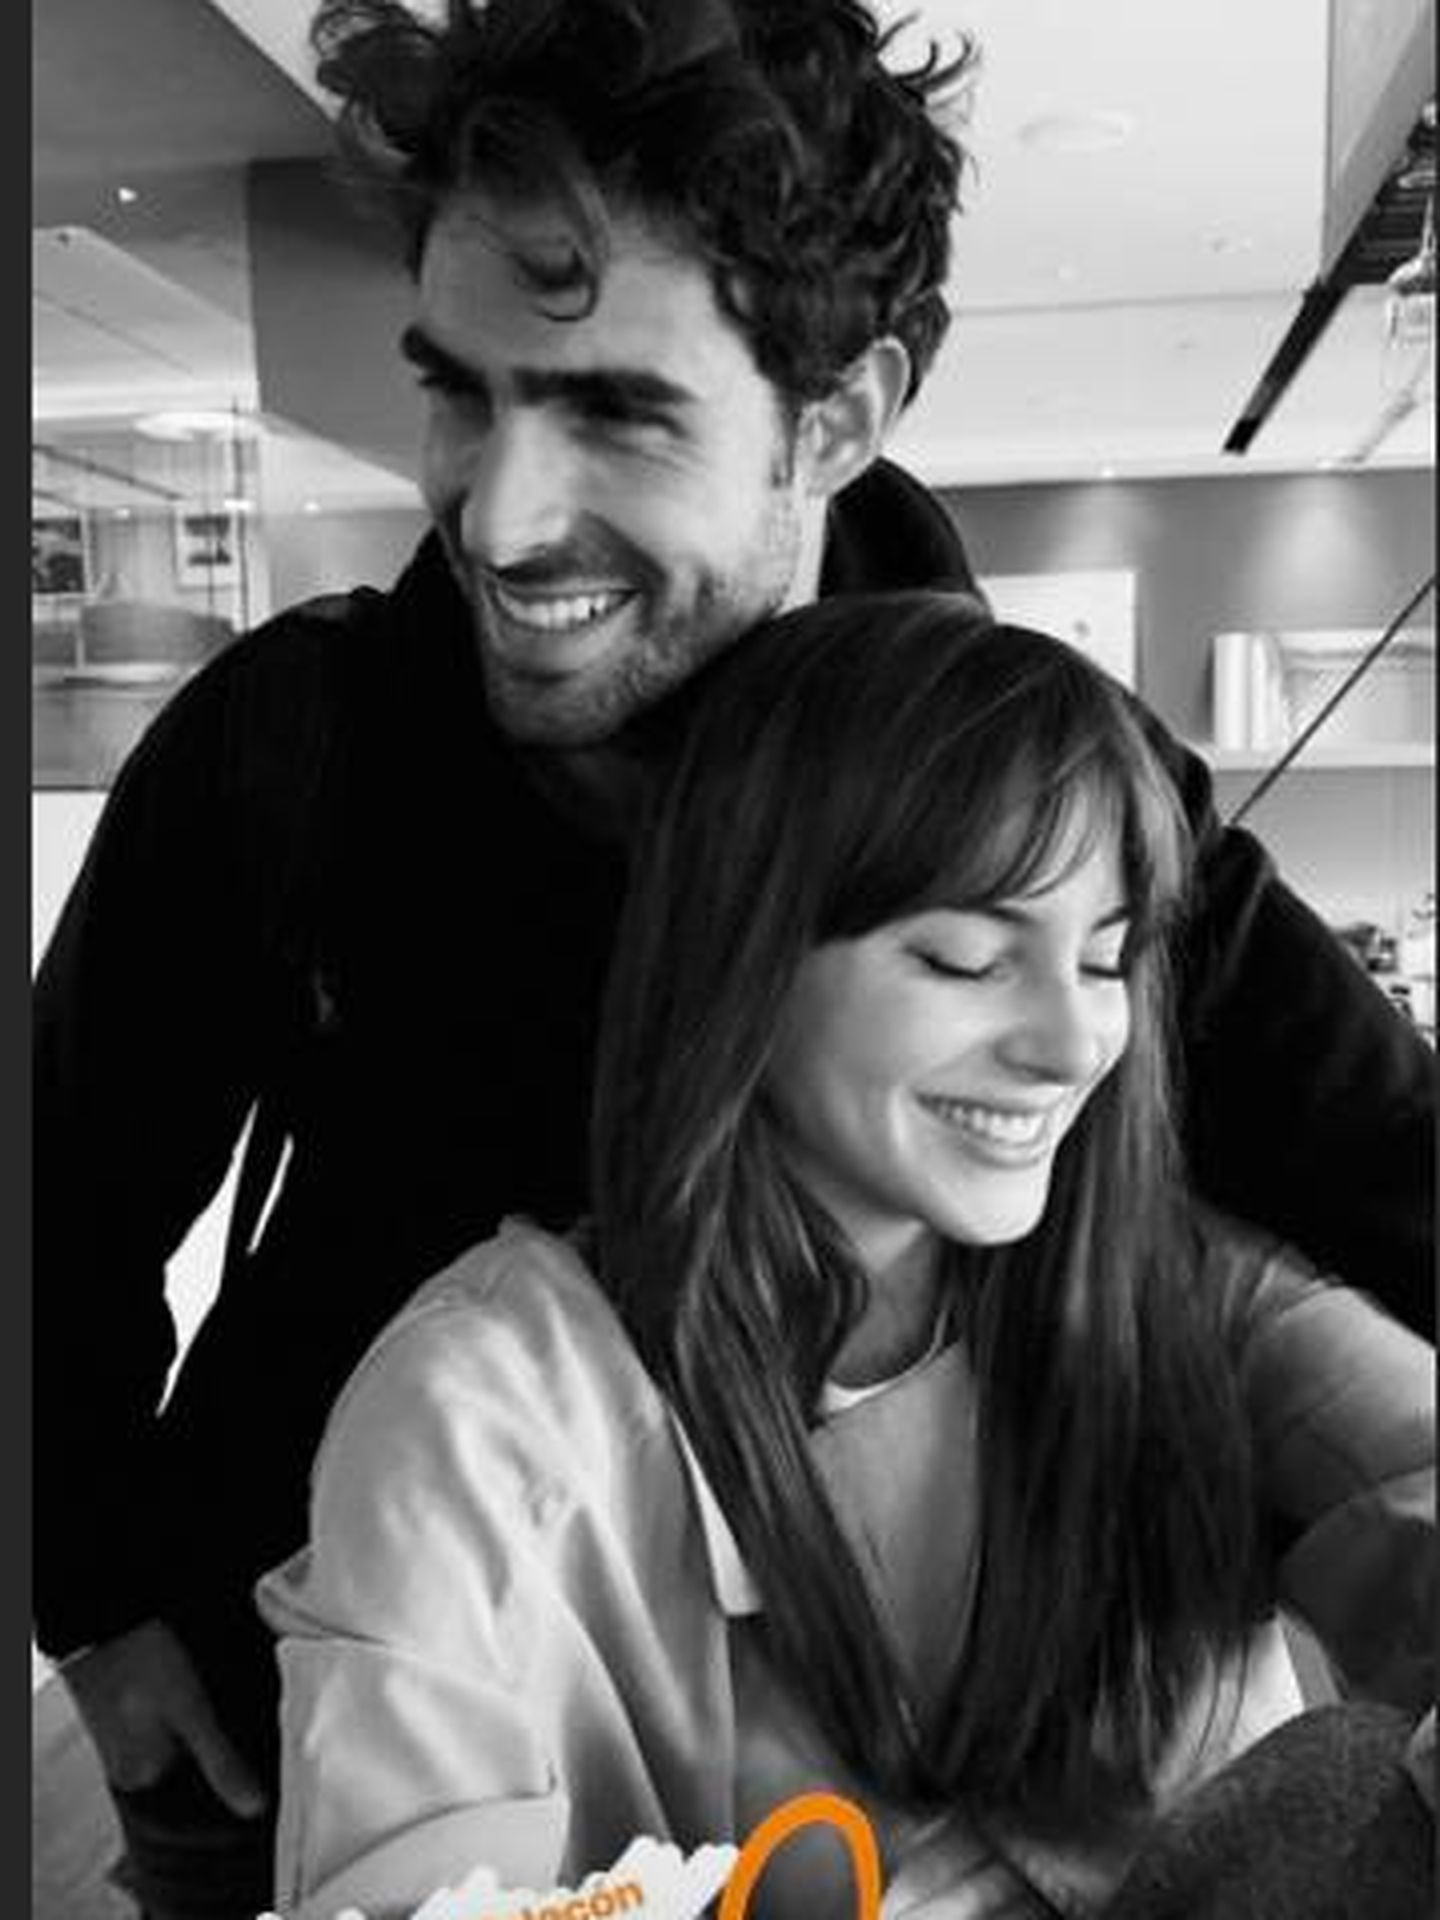 Juntos posan en una imagen tomada en el aeropuerto rumbo a París. (Instagram)